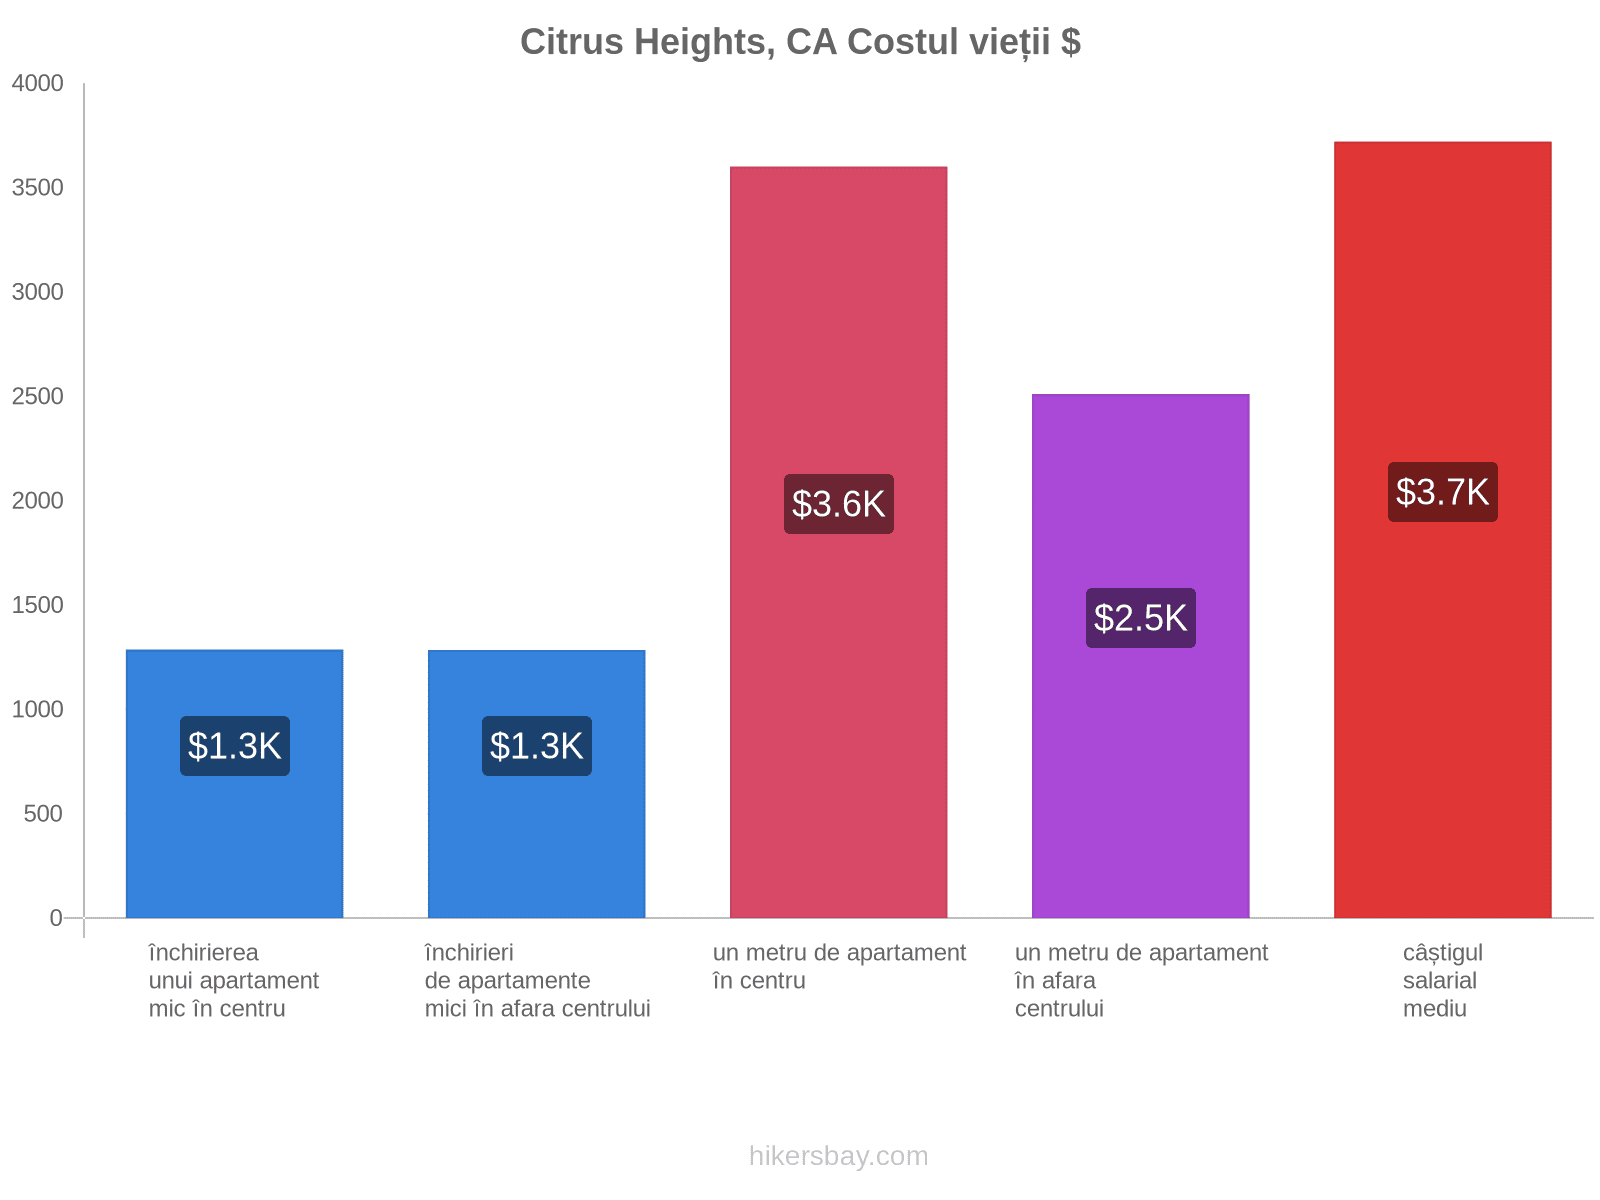 Citrus Heights, CA costul vieții hikersbay.com